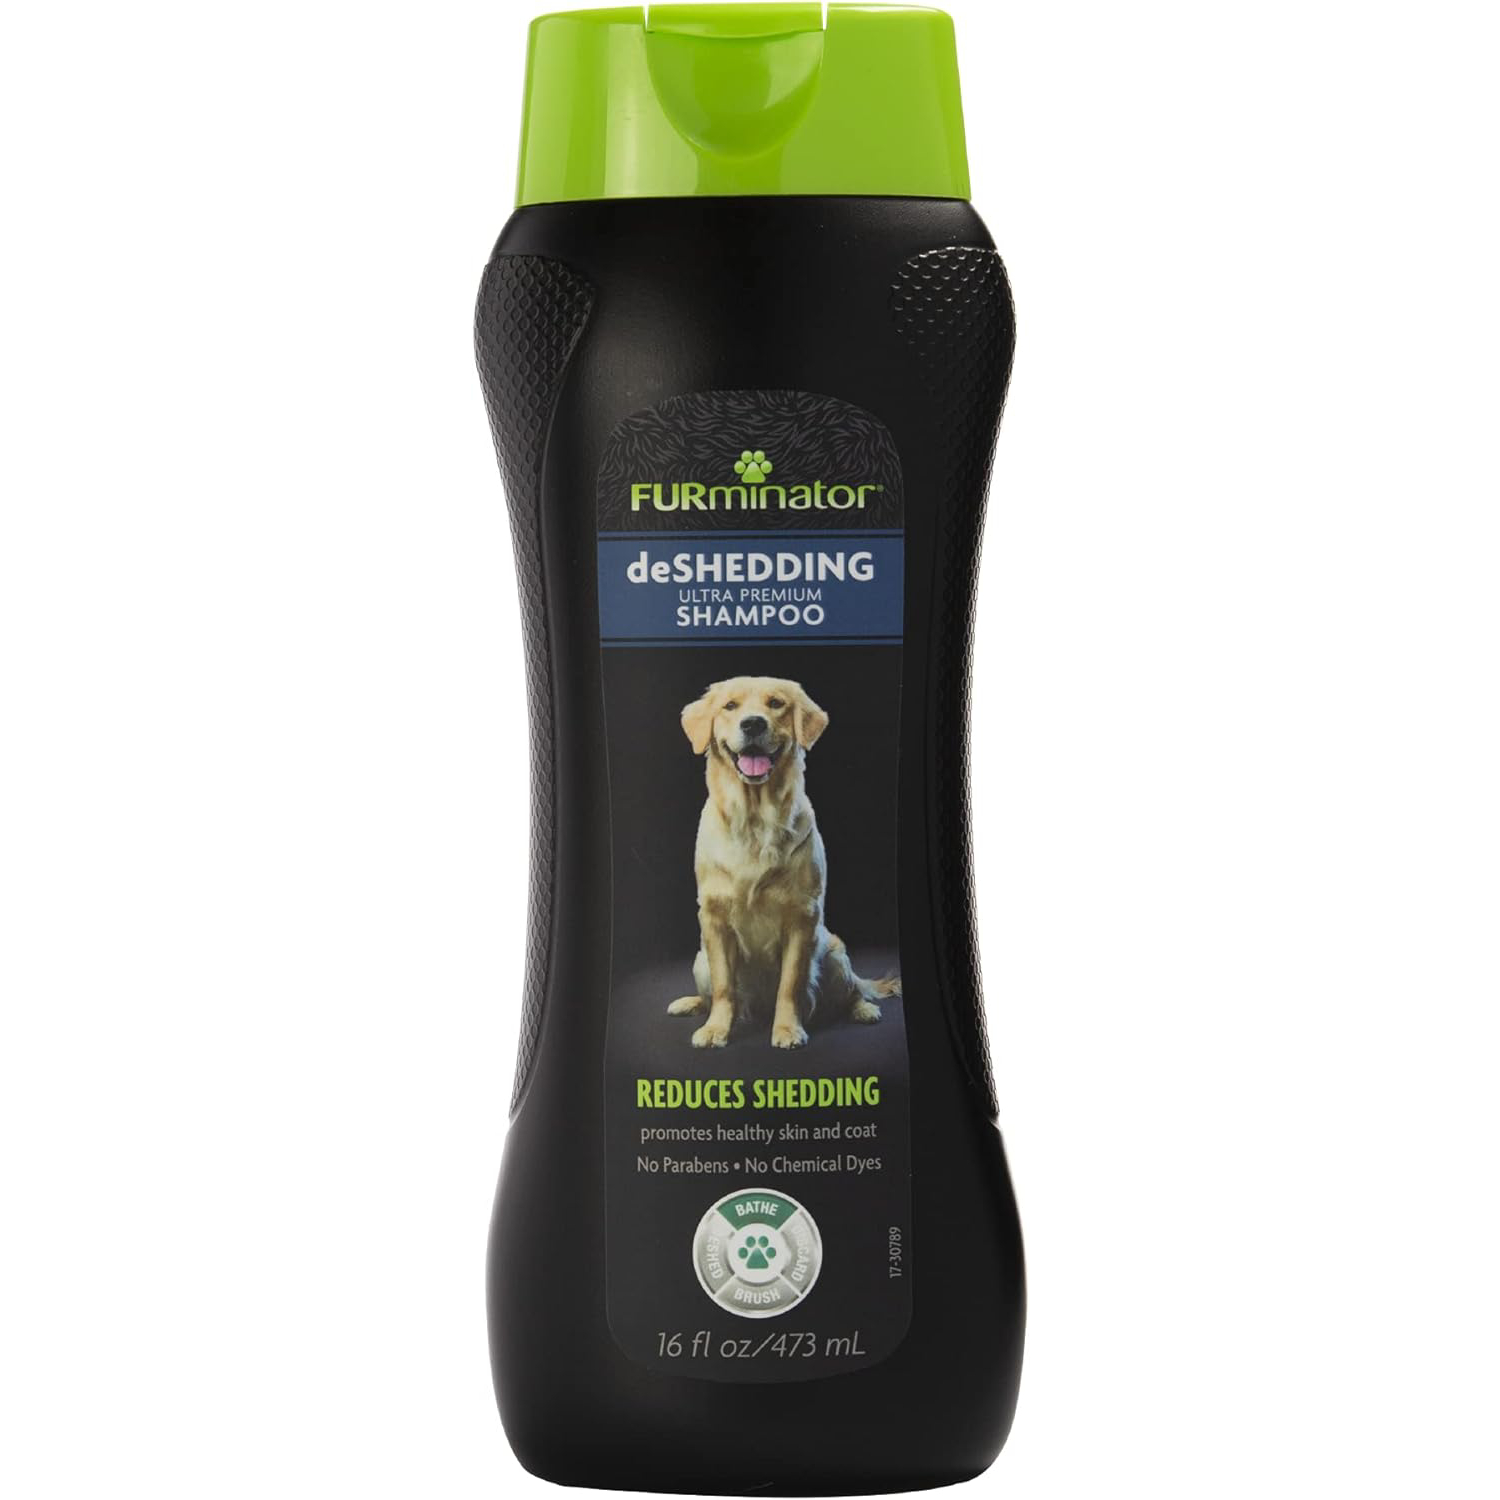 FURminator Ultra Premium deShedding Shampoo for Dogs 